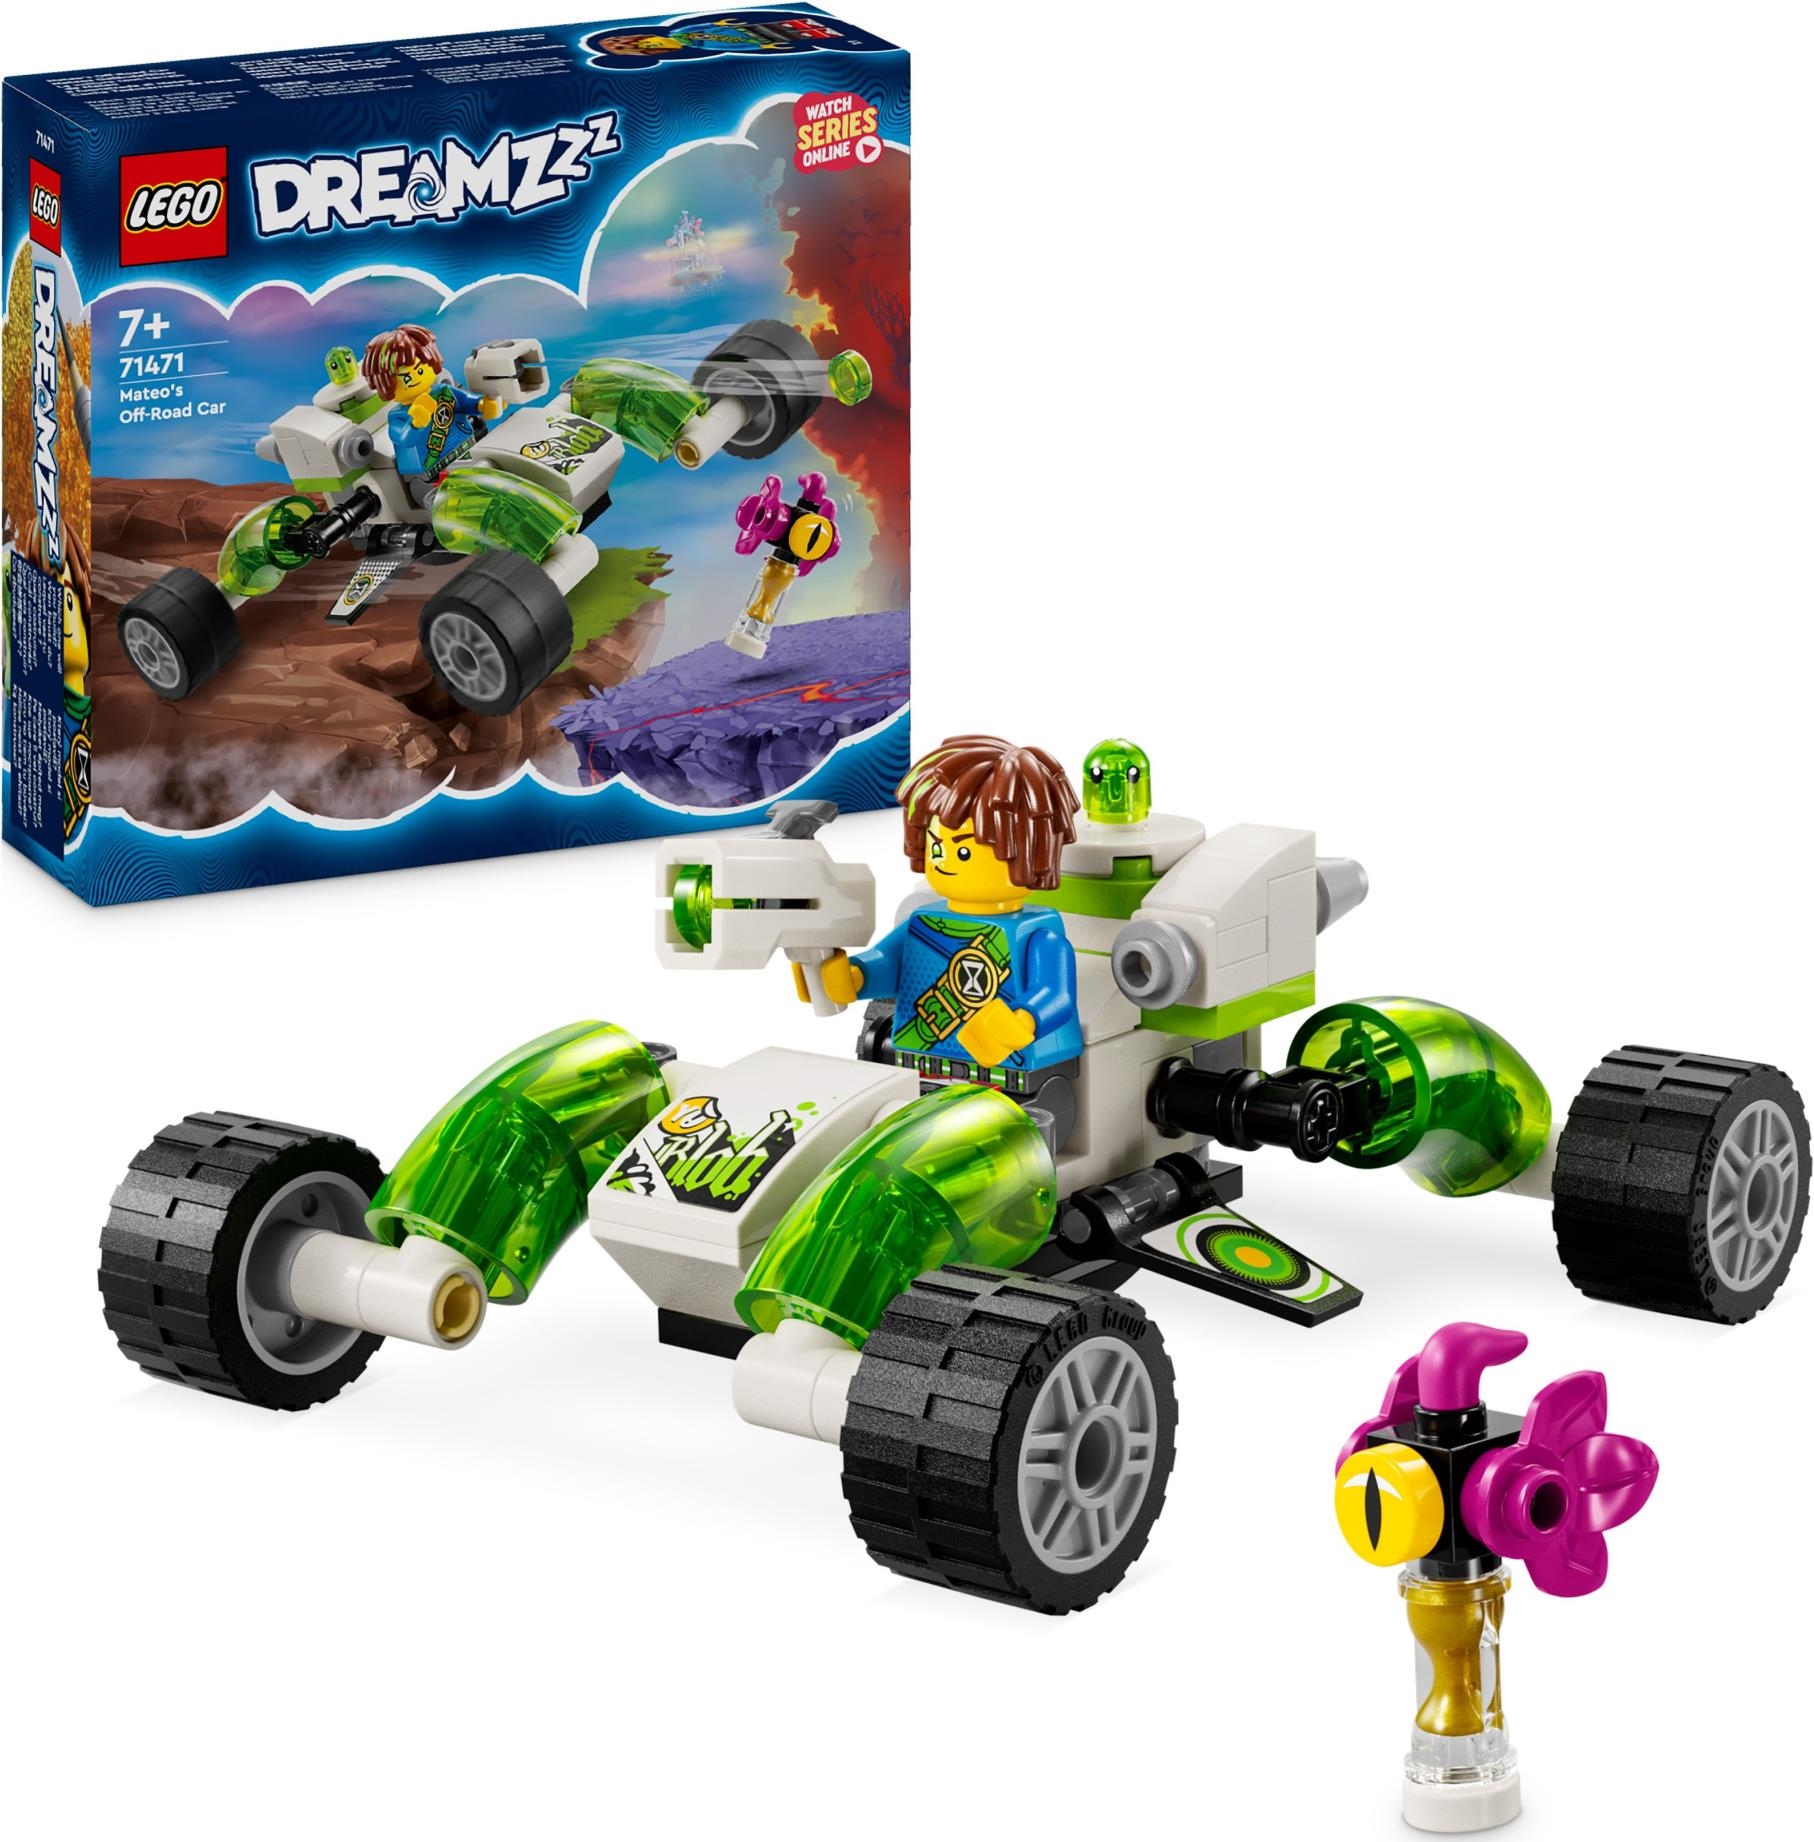 Lego: 71471 - Dreamzzz - Il Fuoristrada Di Mateo